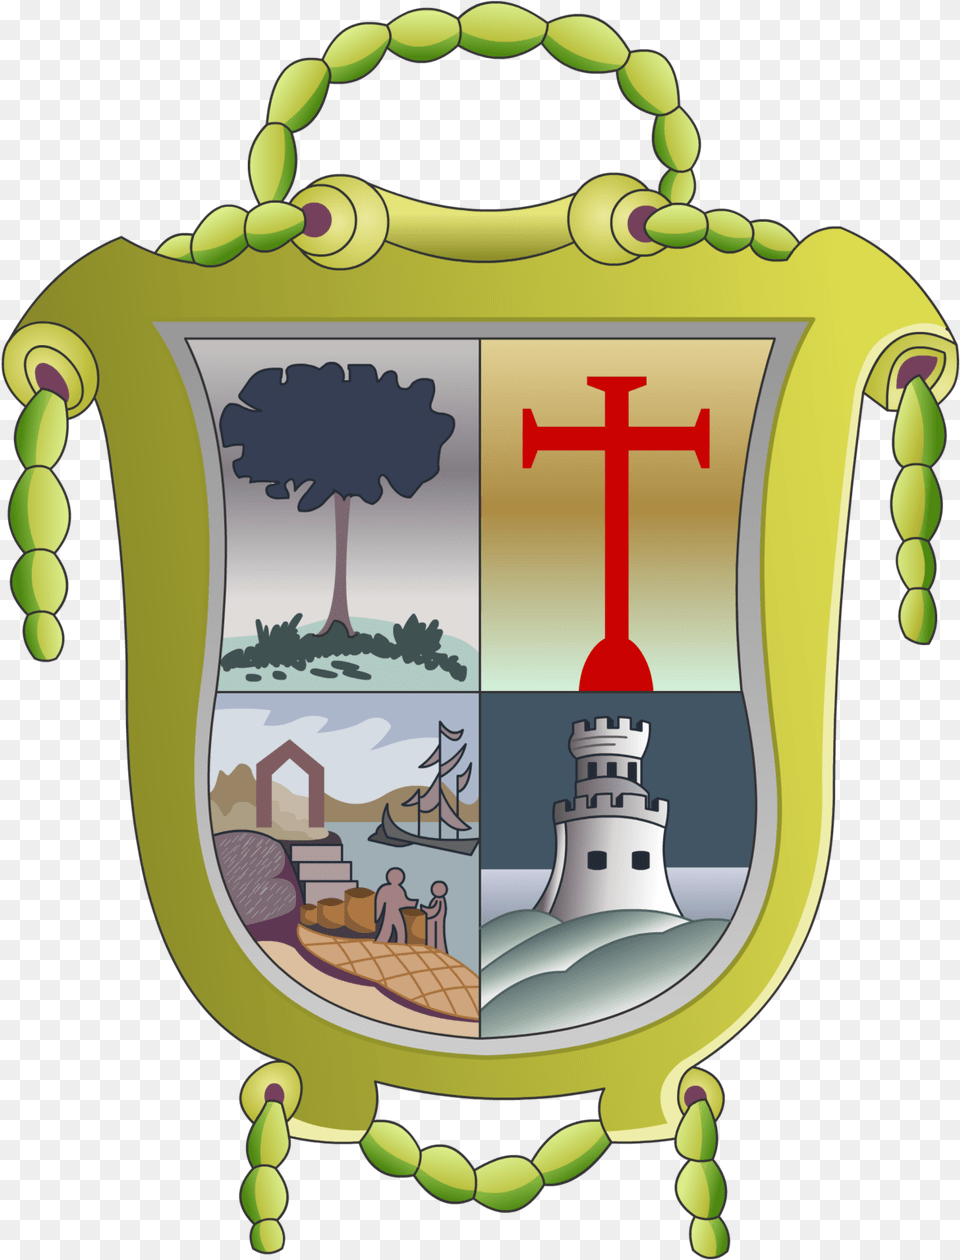 Escudo De Trinidad Cuba, Armor, Cross, Symbol, Person Png Image